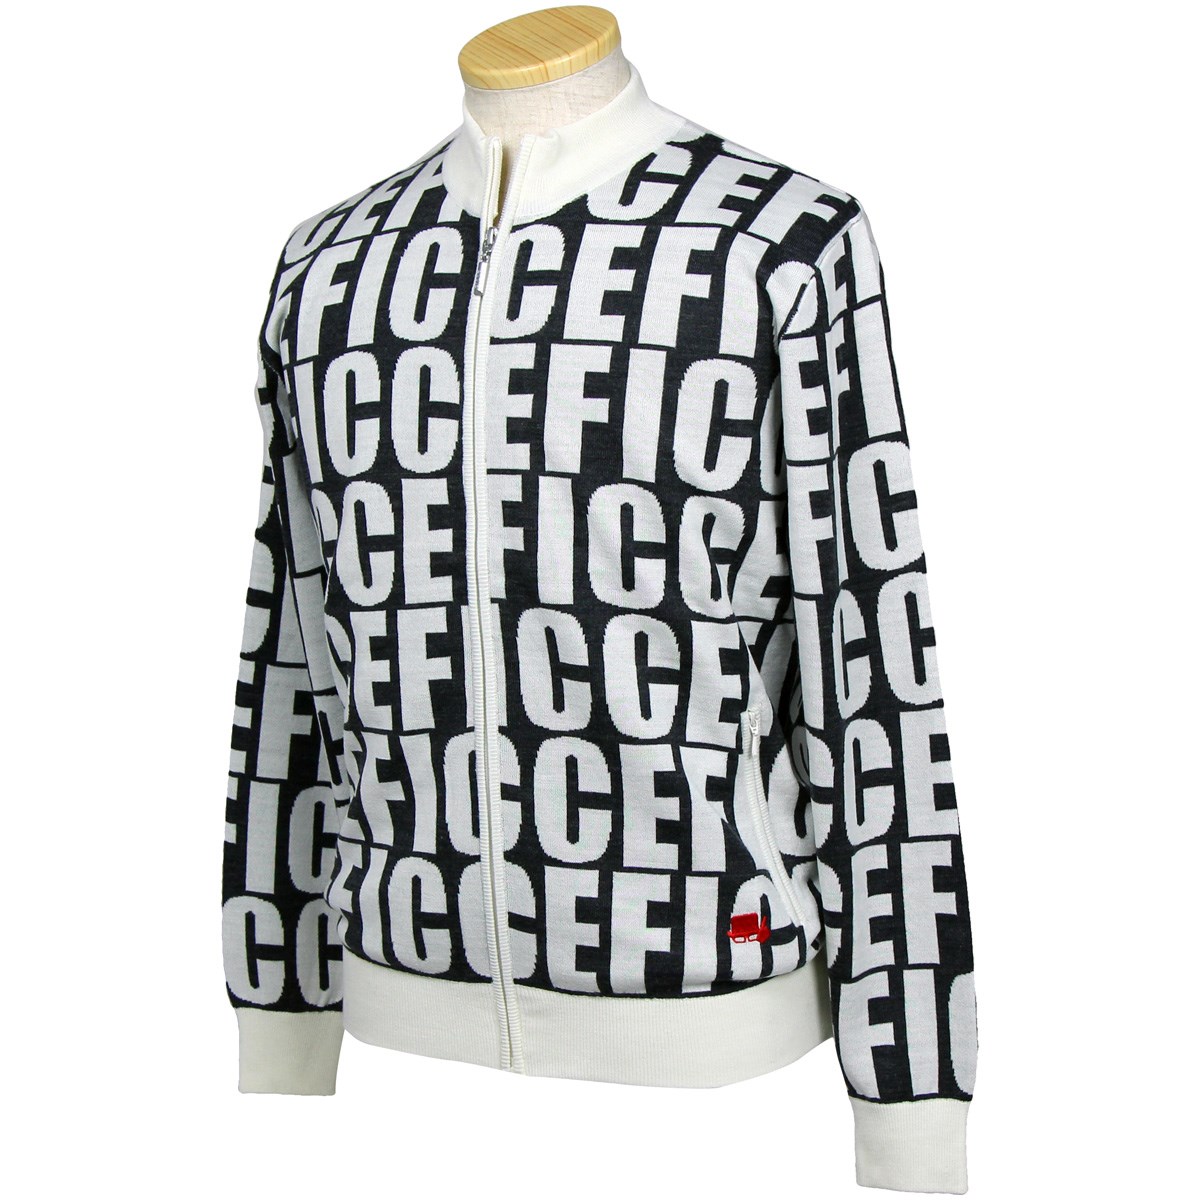 「フィッチェゴルフ ジップセーター 」（セーター・トレーナー）- ゴルフ(GOLF)用品のネット通販